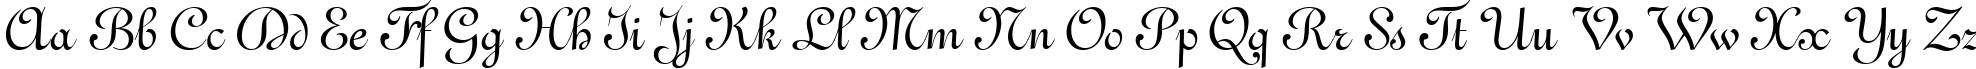 Пример написания английского алфавита шрифтом Gando BT